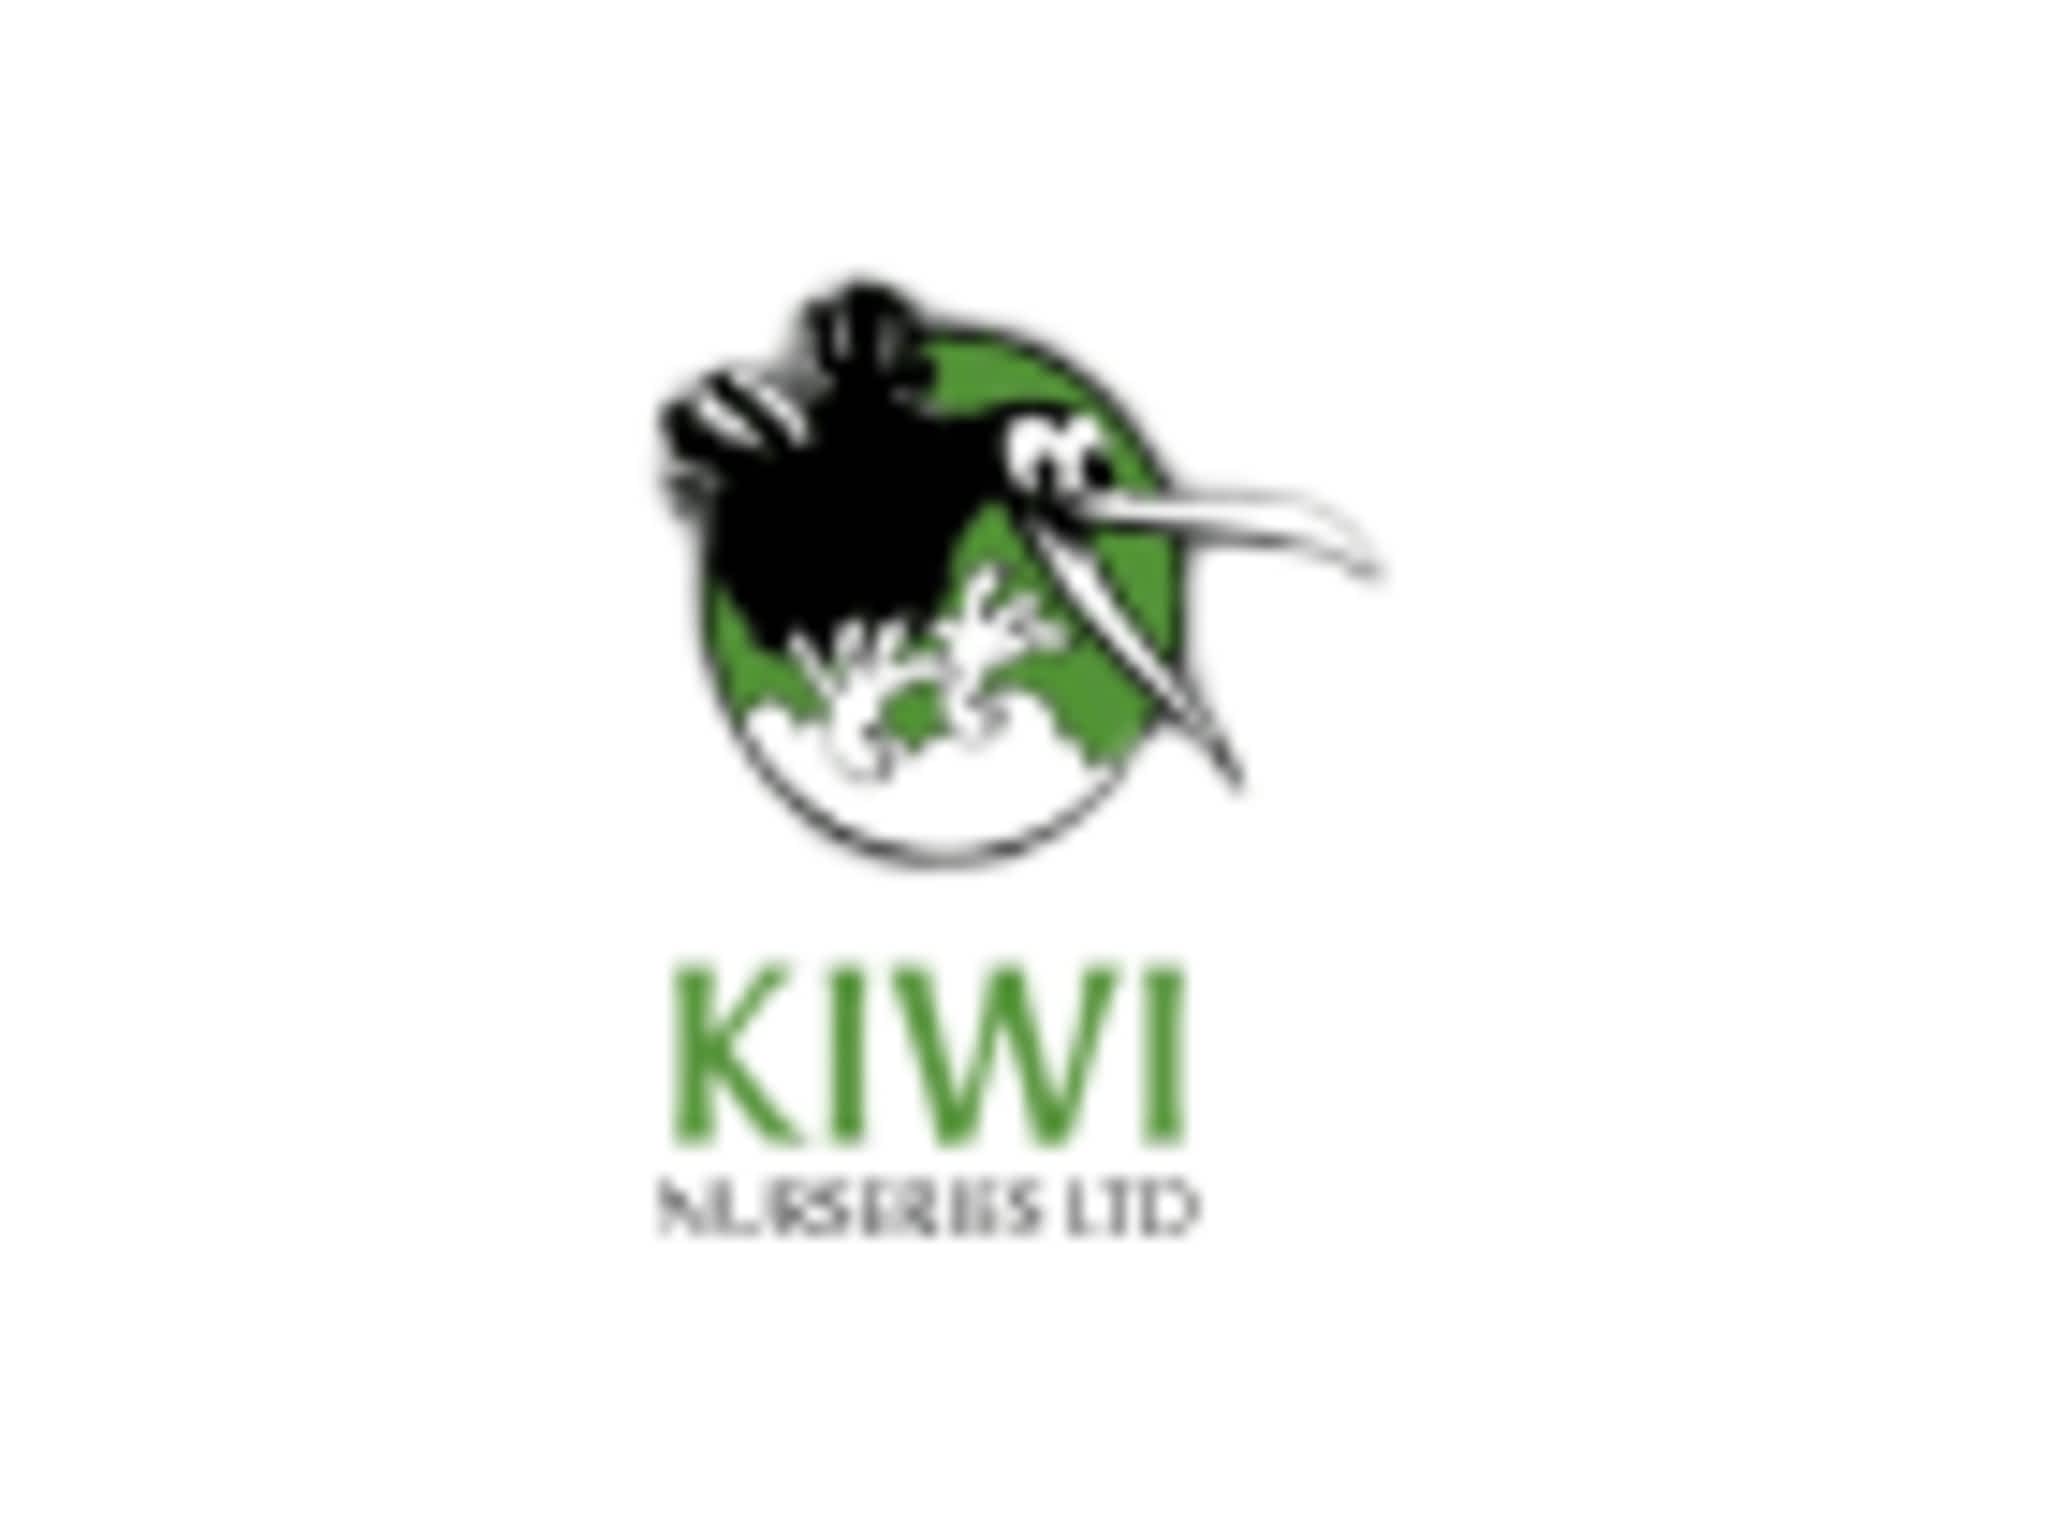 photo Kiwi Nurseries Ltd